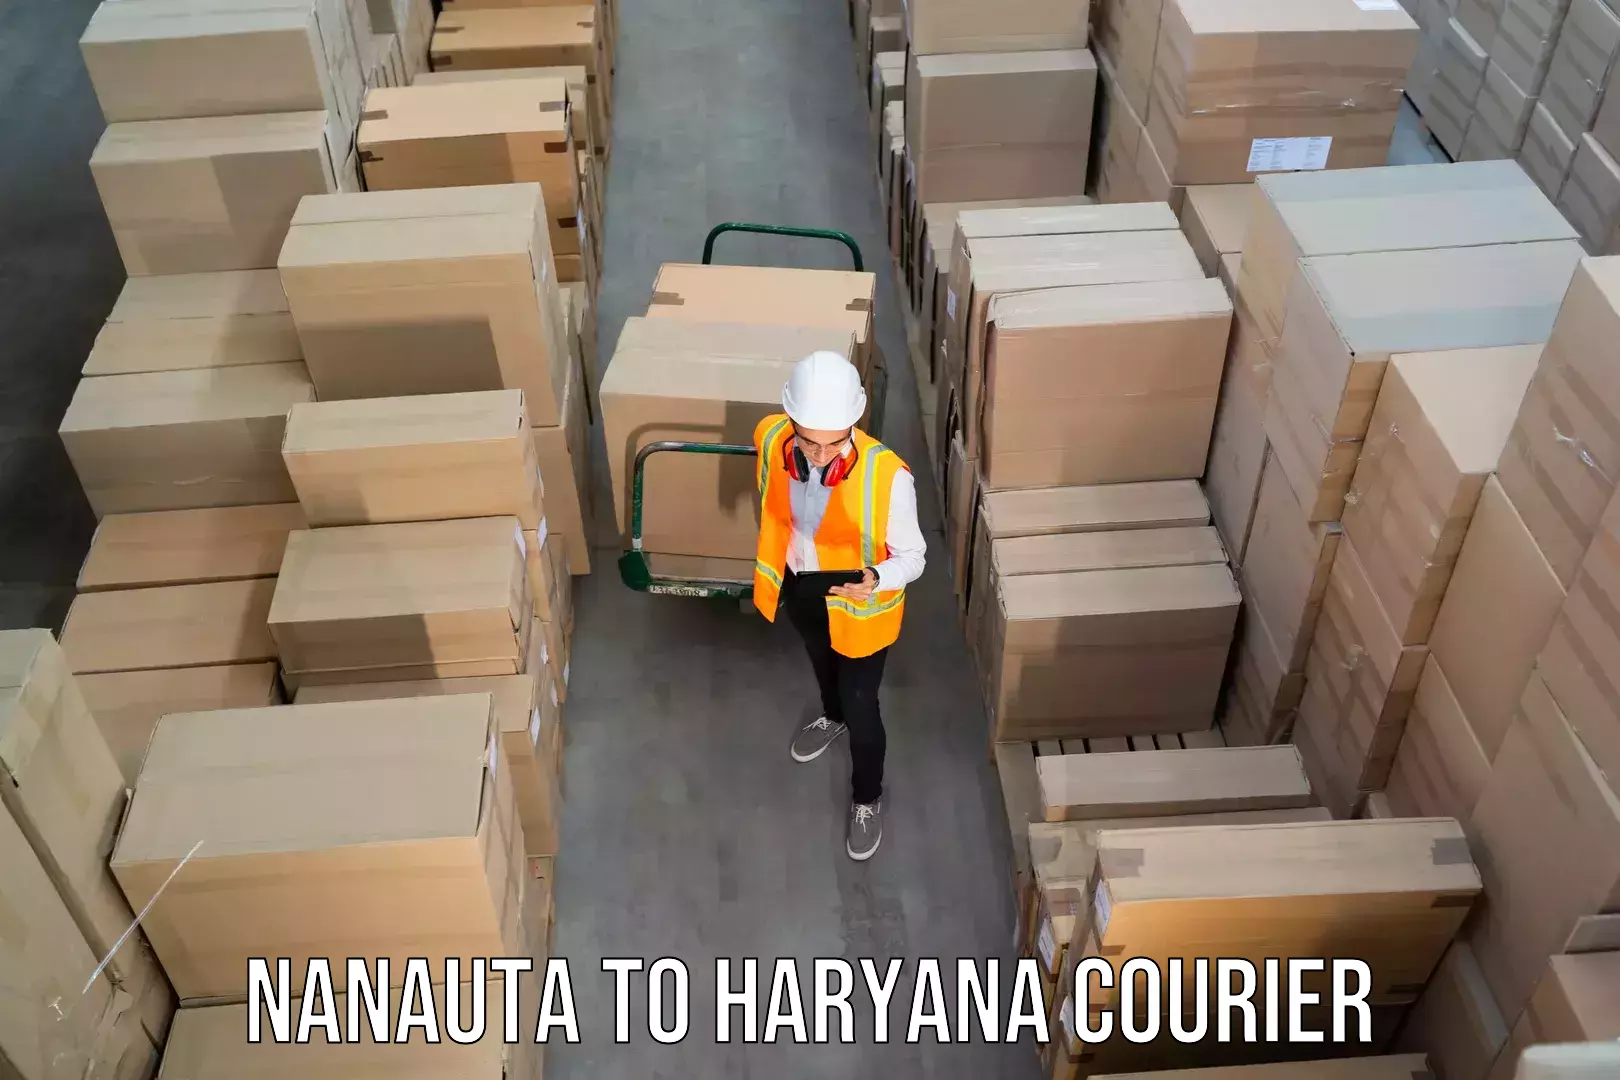 Customizable delivery plans Nanauta to NIT Kurukshetra